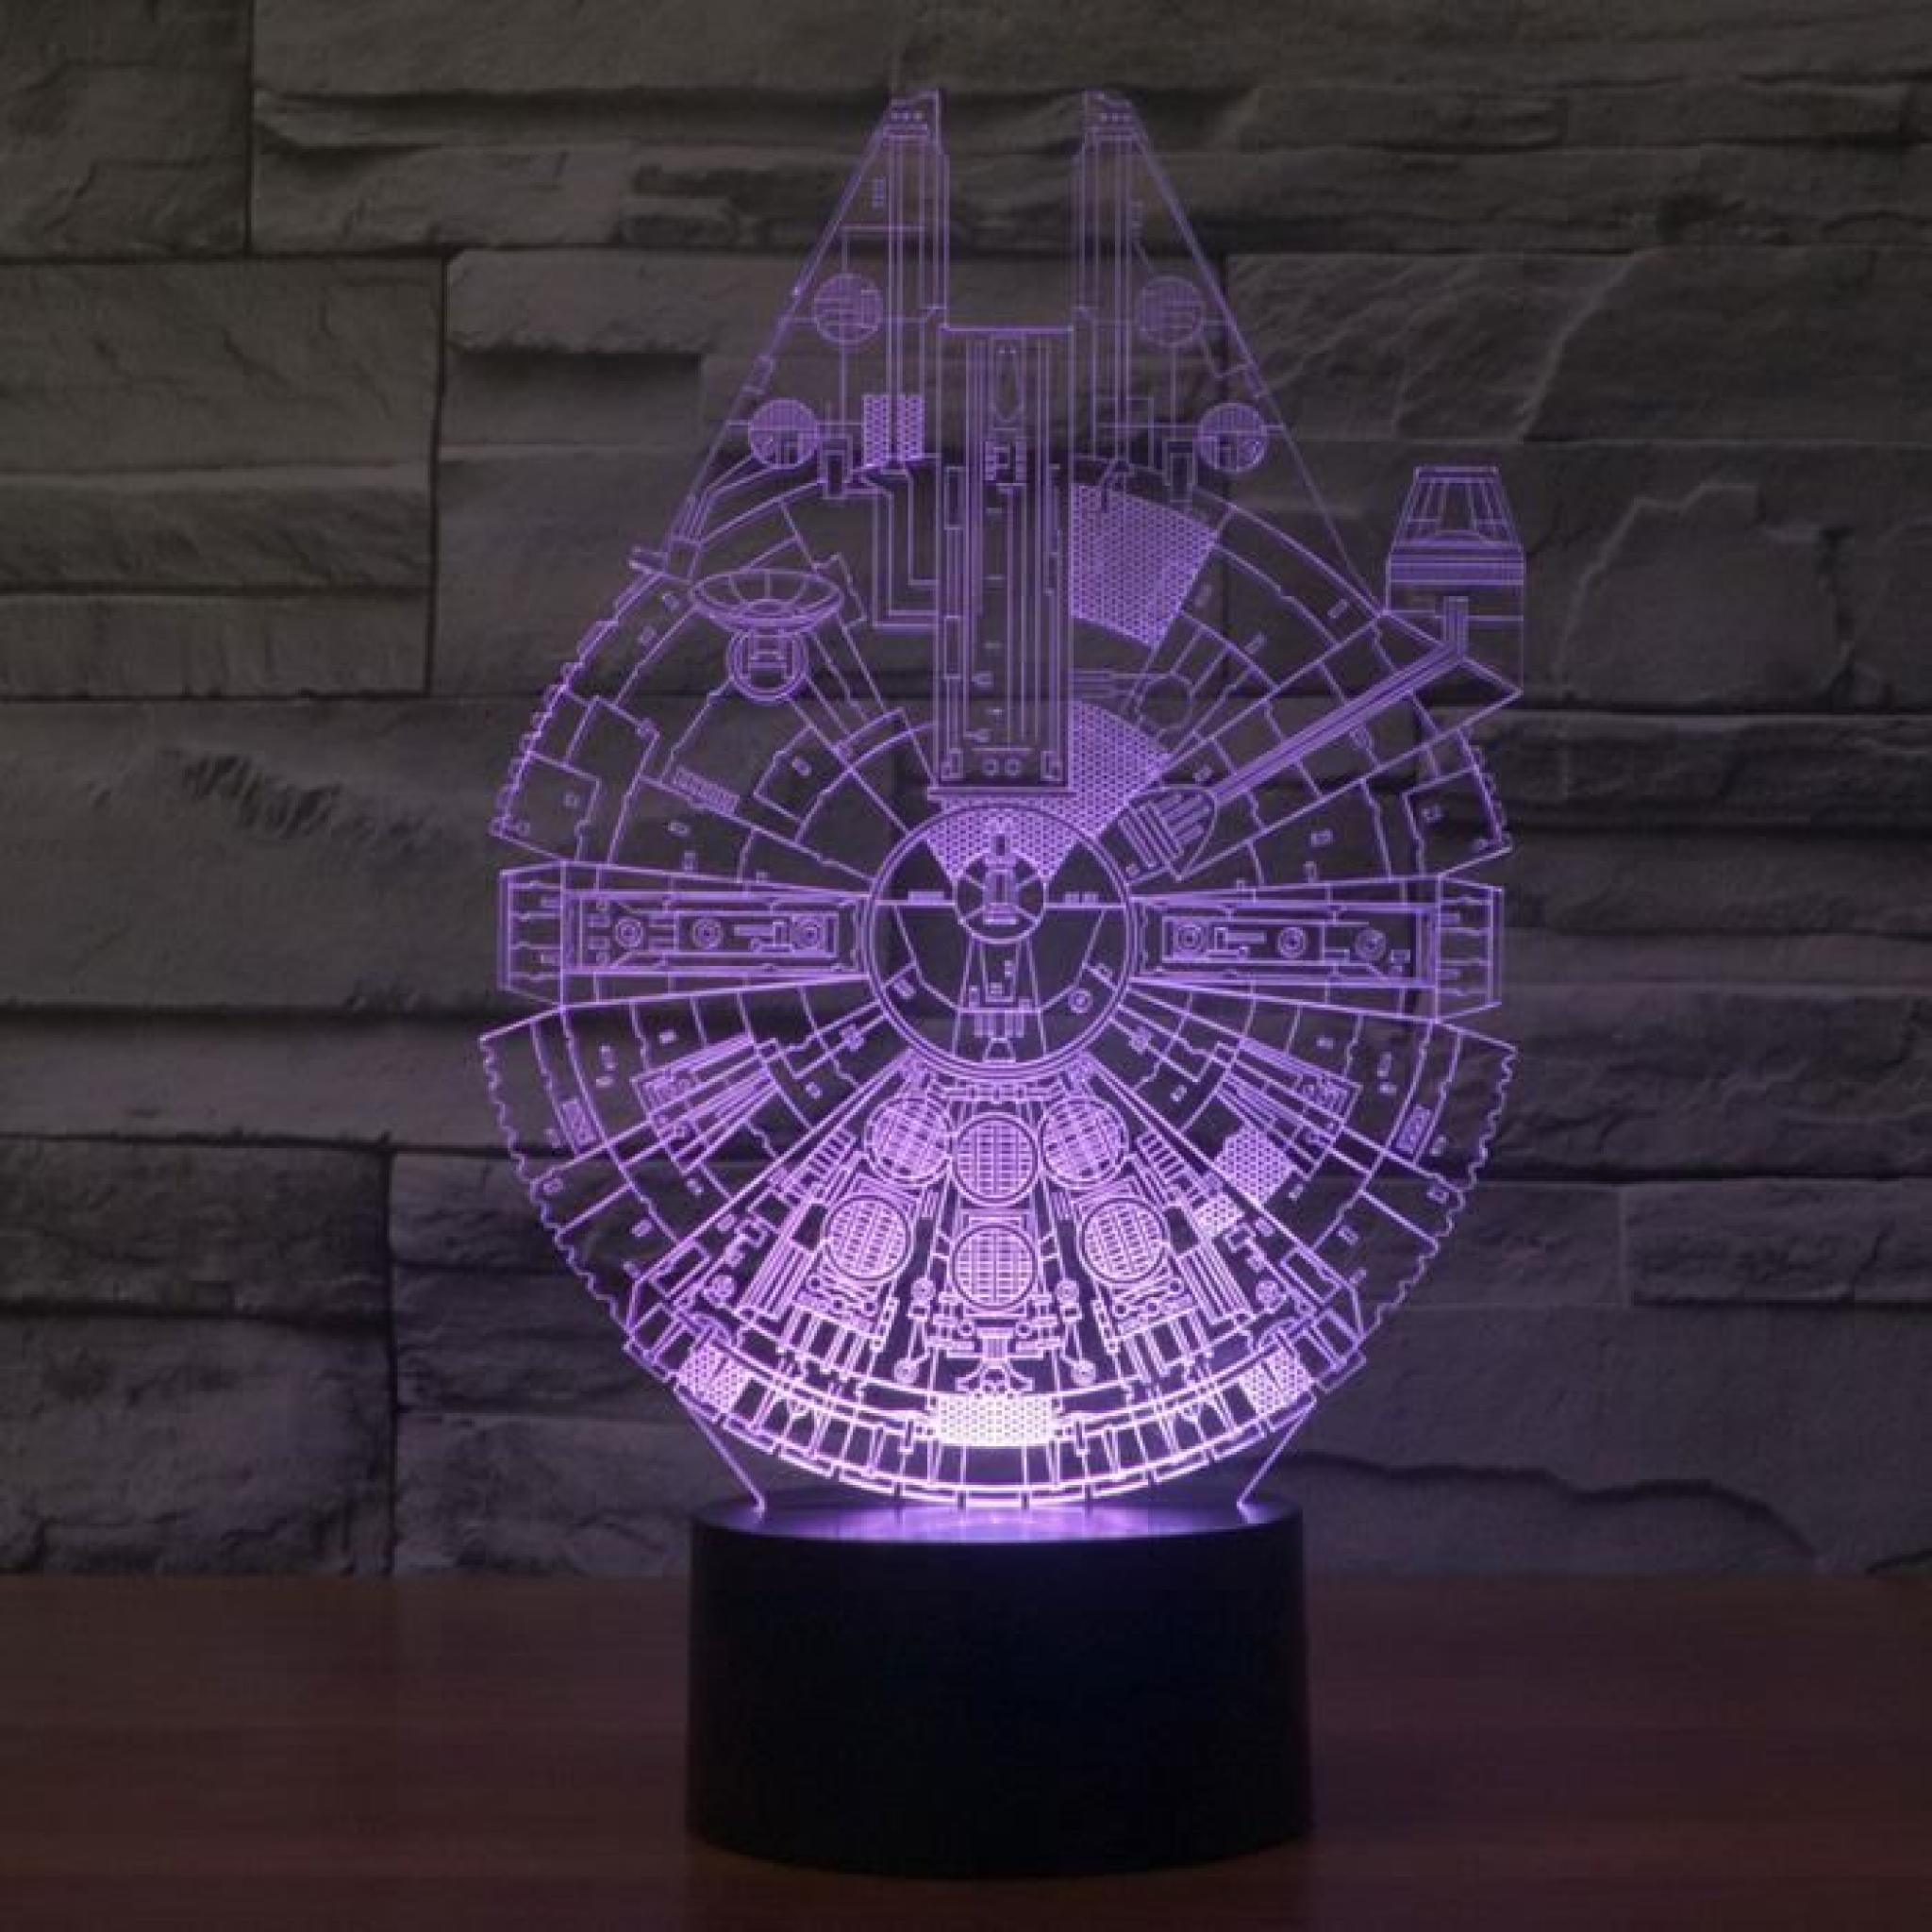 MCE Star Wars Lampe Millennium Falco Acrylique lampe 3D Lampe gradient sept coloré LED+un Rubik's cube gratuit pas cher